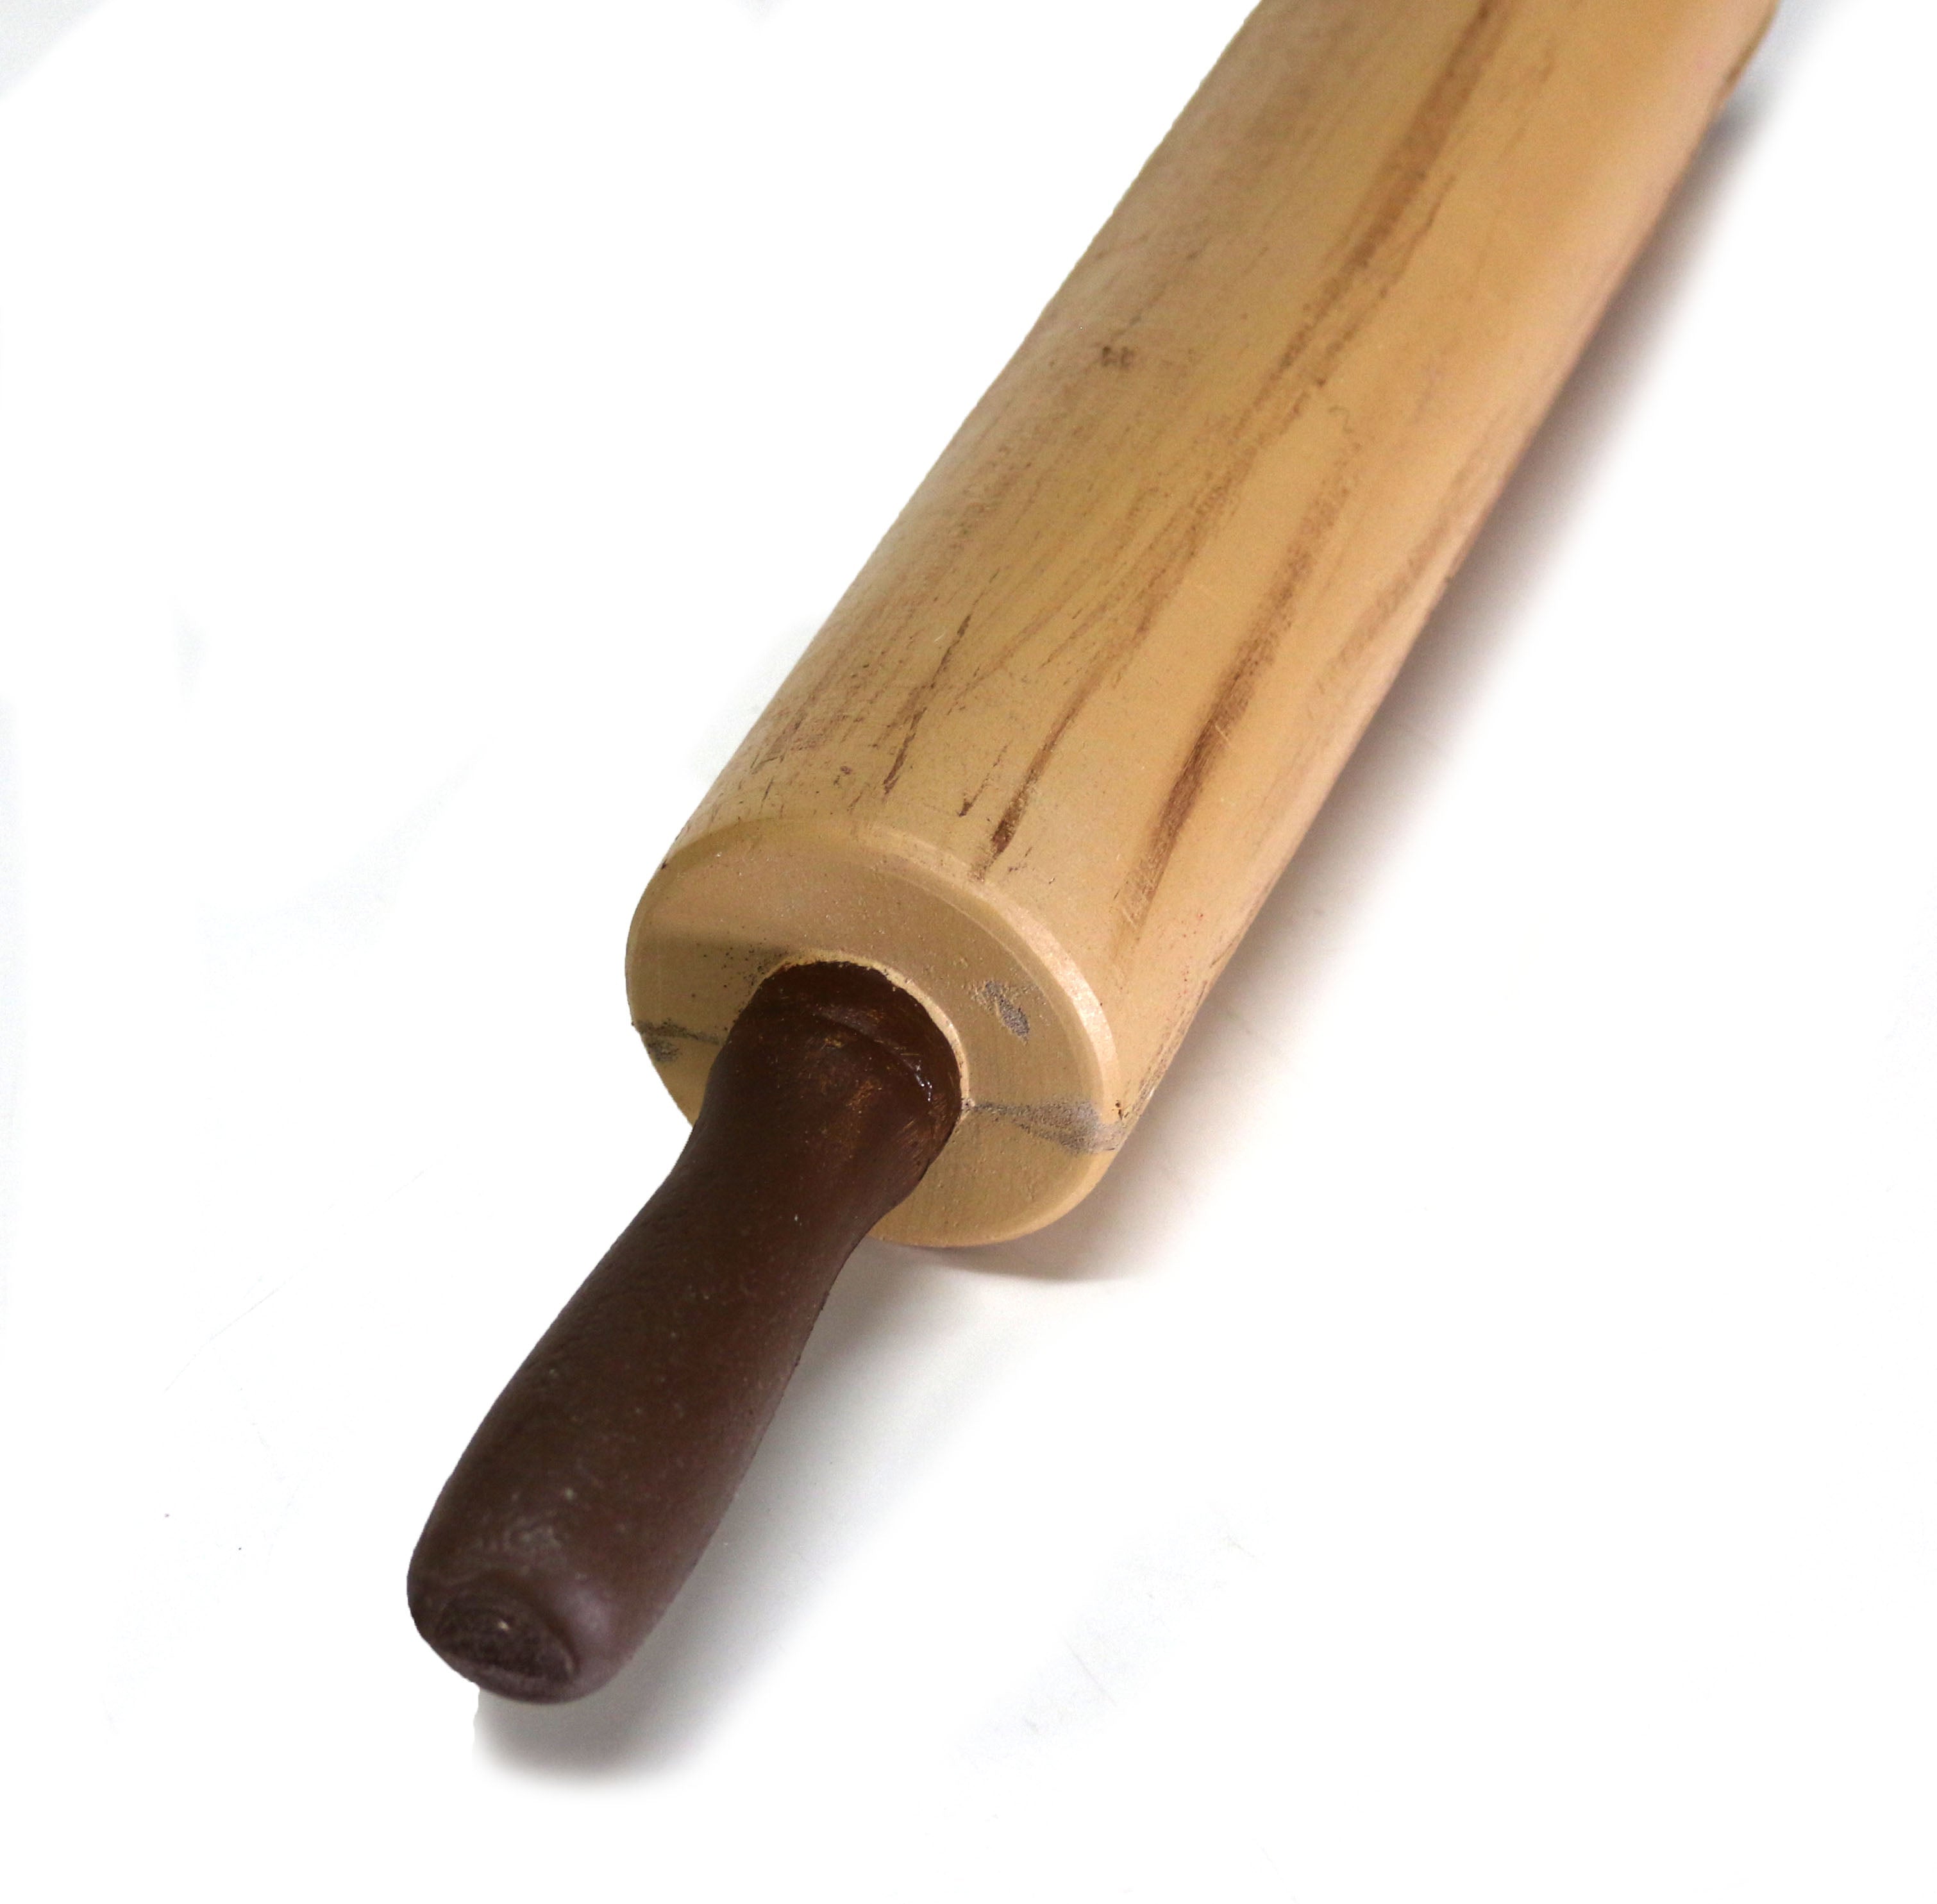 Foam Rubber Rolling Pin Prop - LIGHT WOOD GRAIN - Light Wood Grain